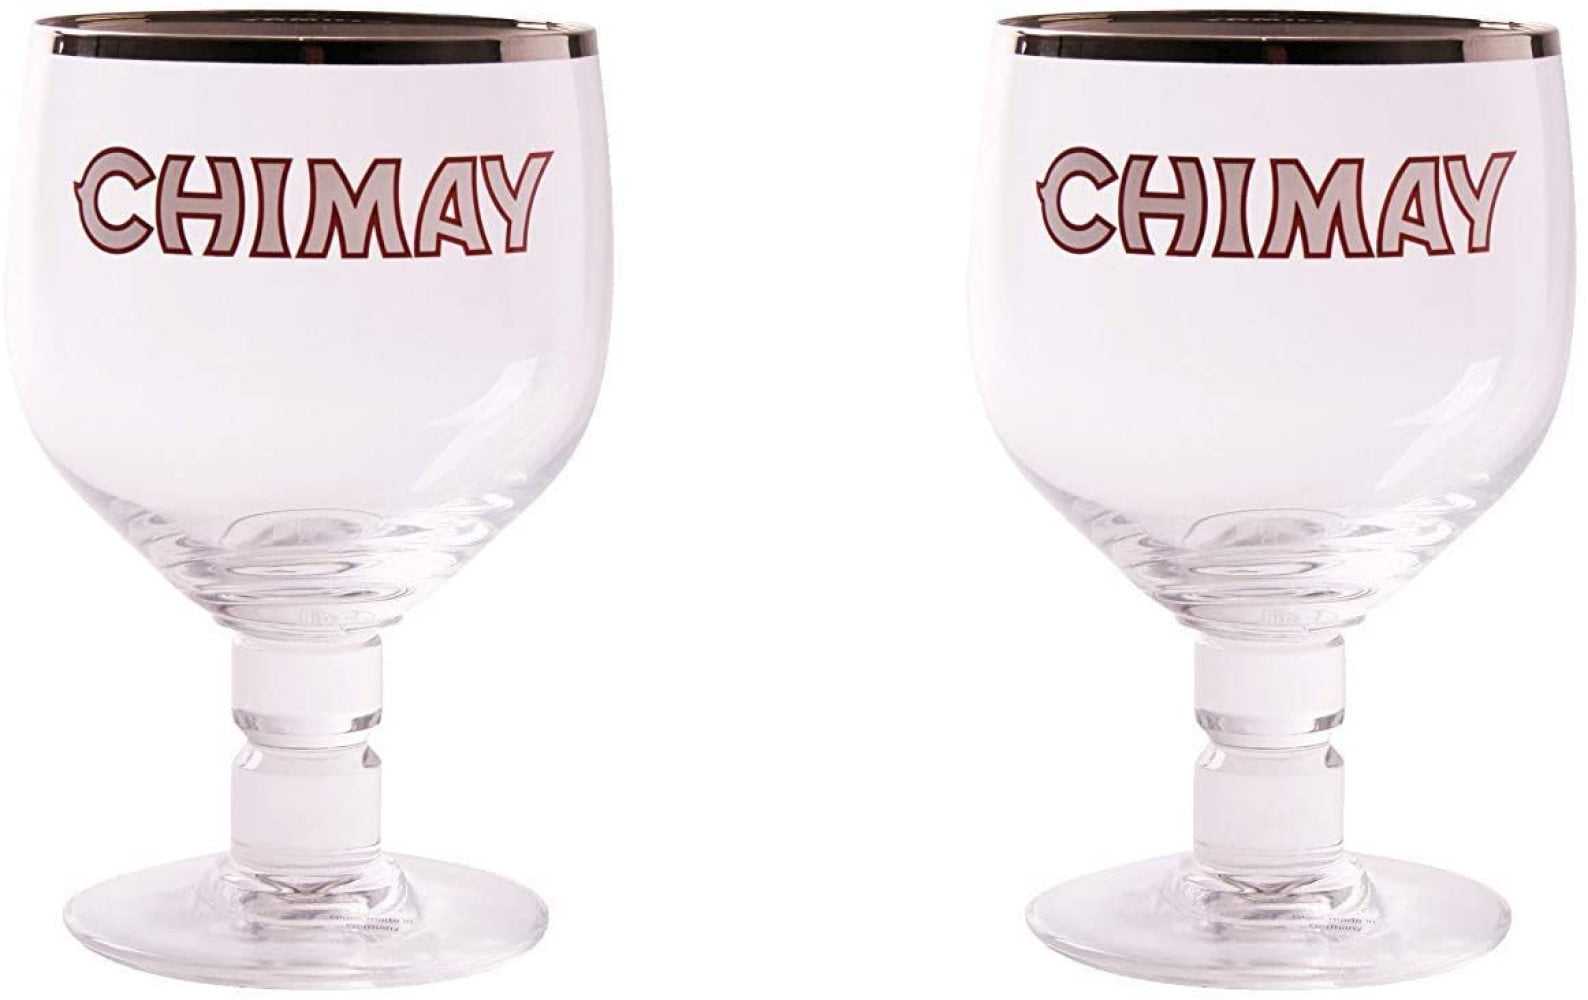 Chimay 3-Pack Original Goblet Chalice Beer Glasses 33cl 